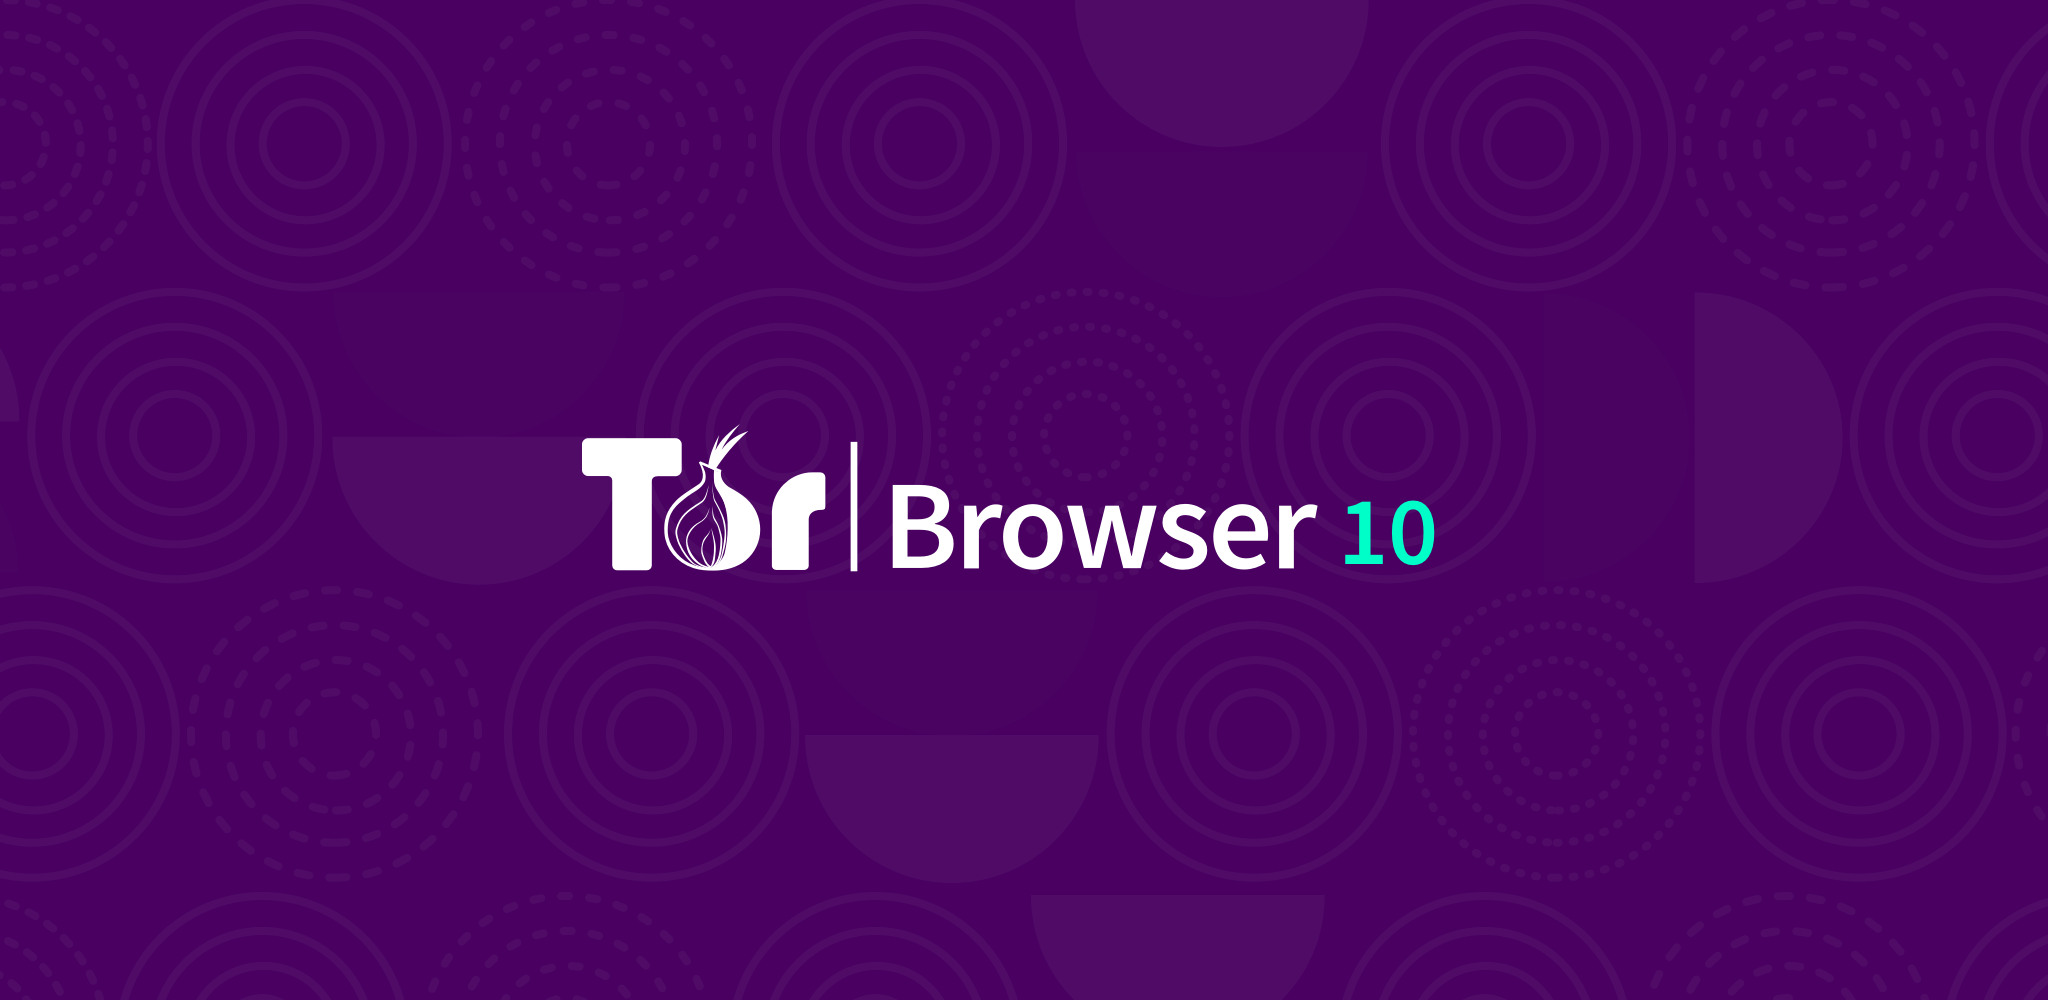 Tor browser mobile windows mega что такое javascript как его включить в тор браузере mega вход